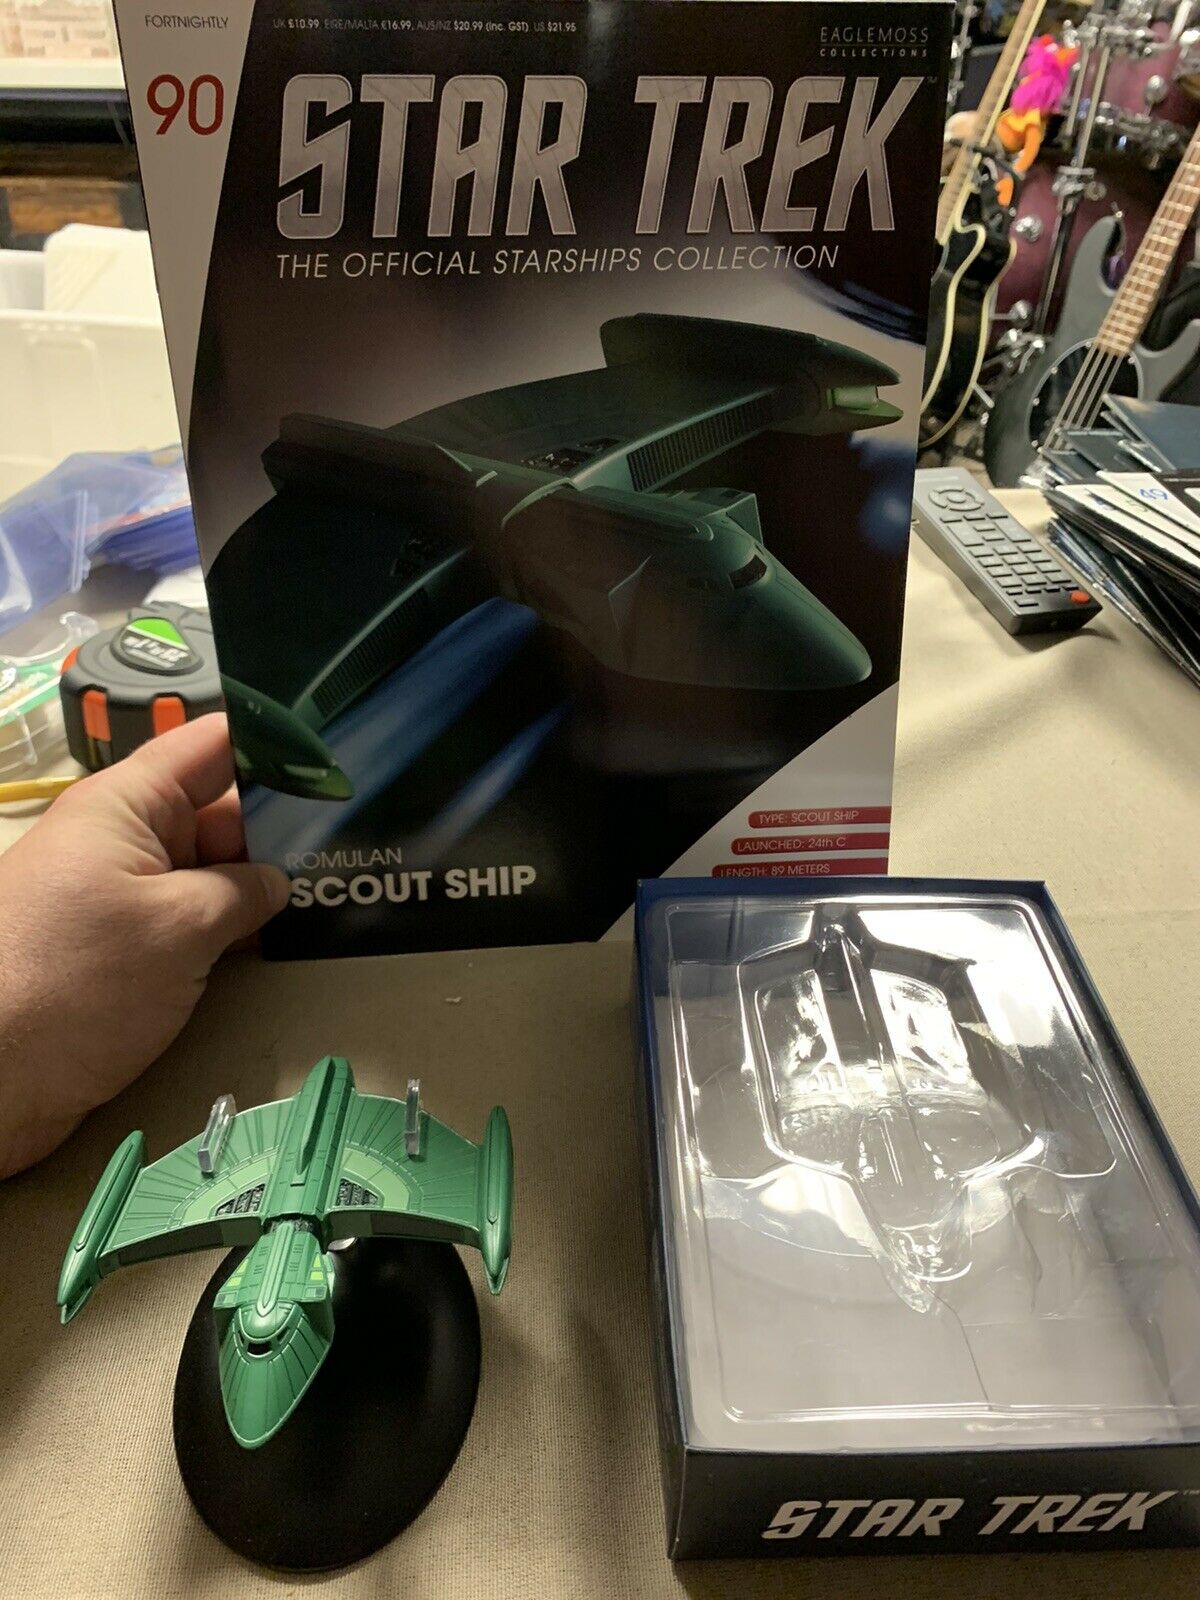 Eaglemoss Star Trek Romulan Scout Ship Issue # 90 Model And Magazine